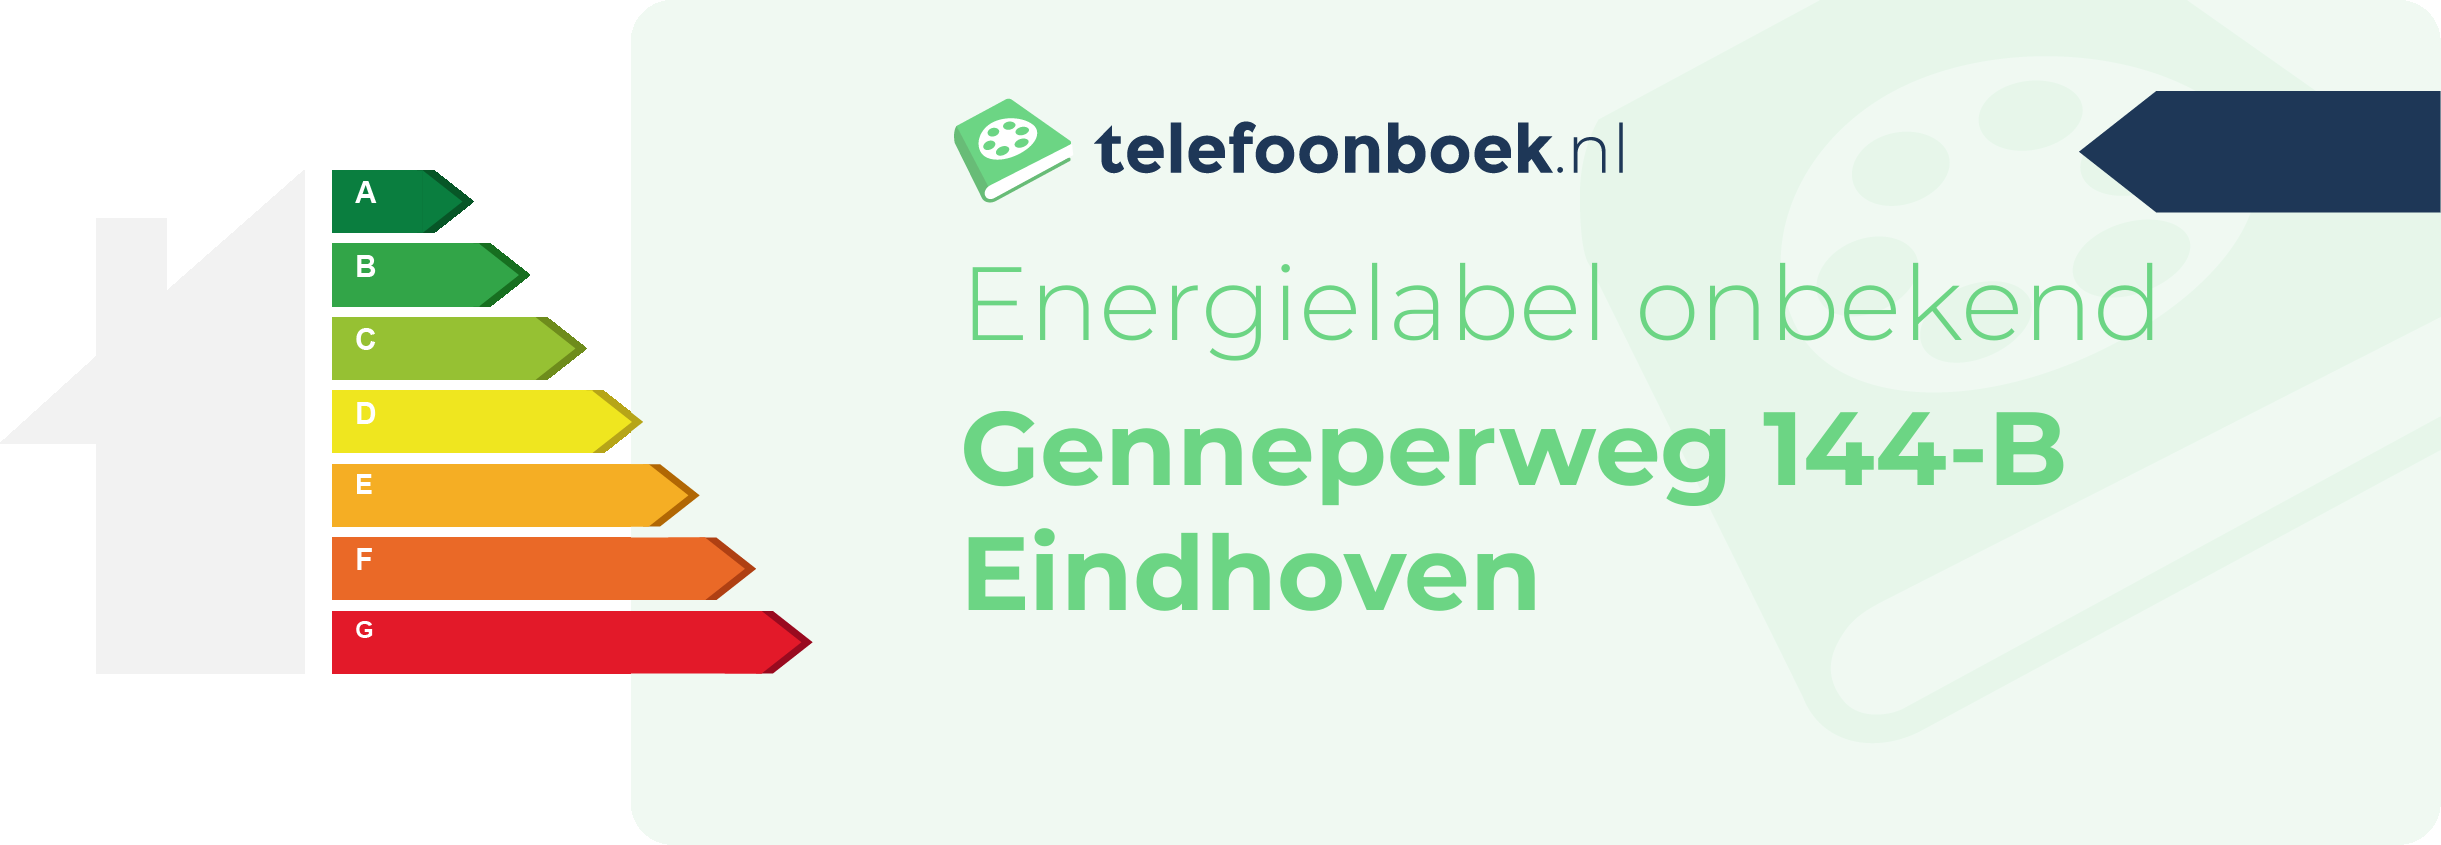 Energielabel Genneperweg 144-B Eindhoven